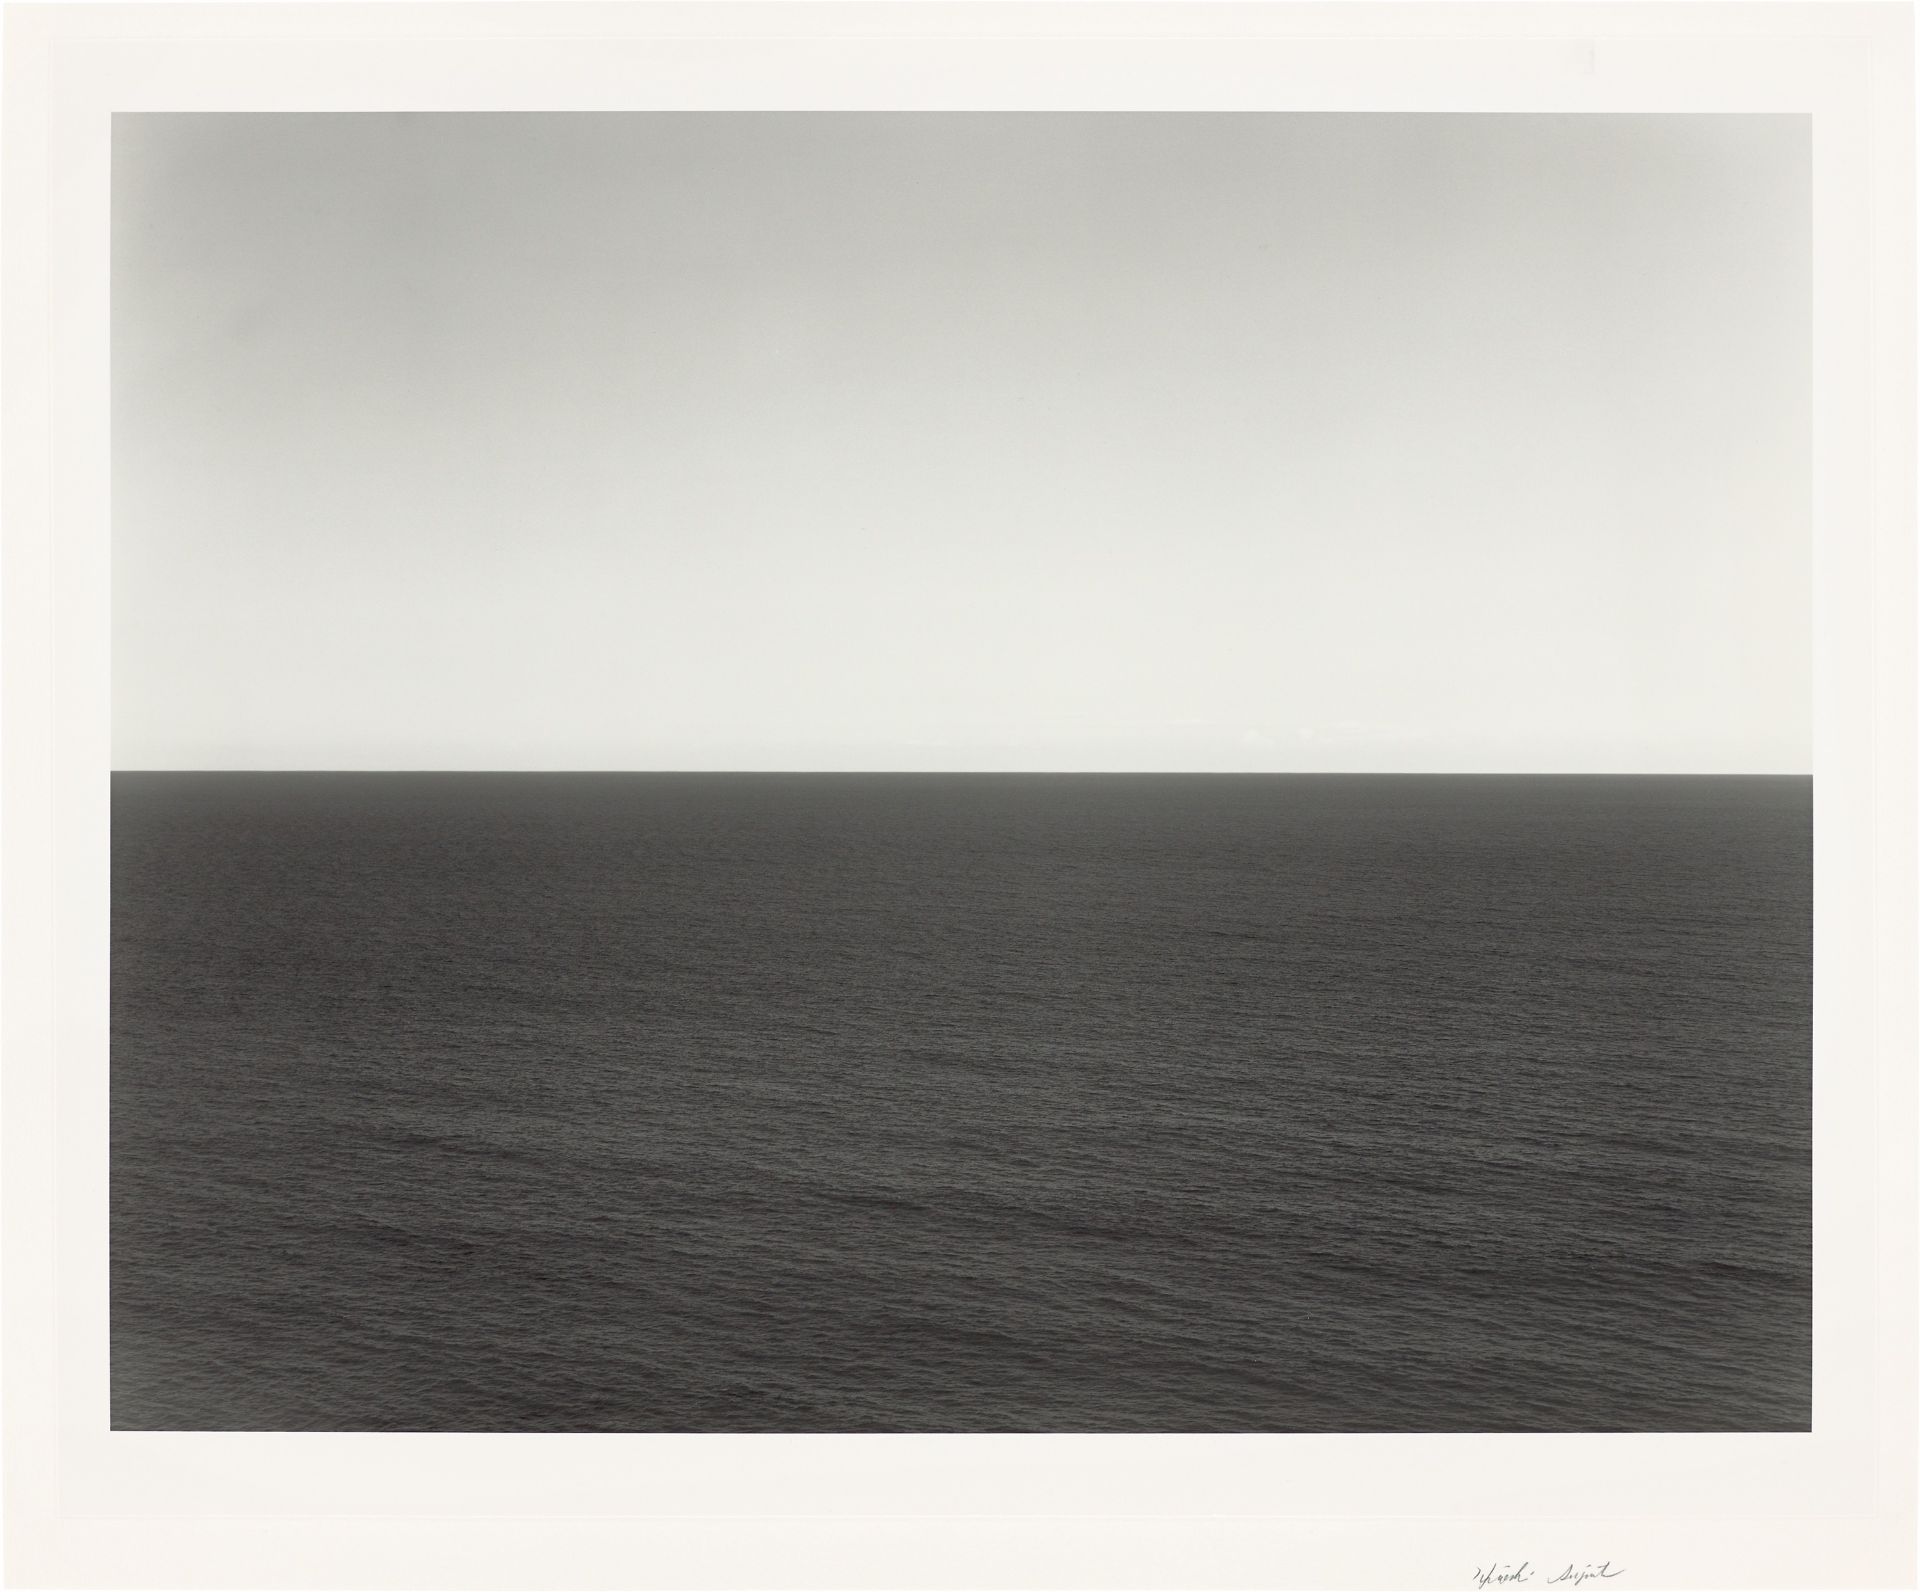 Hiroshi Sugimoto. ”SOUTH PACIFIC OCEAN WAIHAU”. 1990